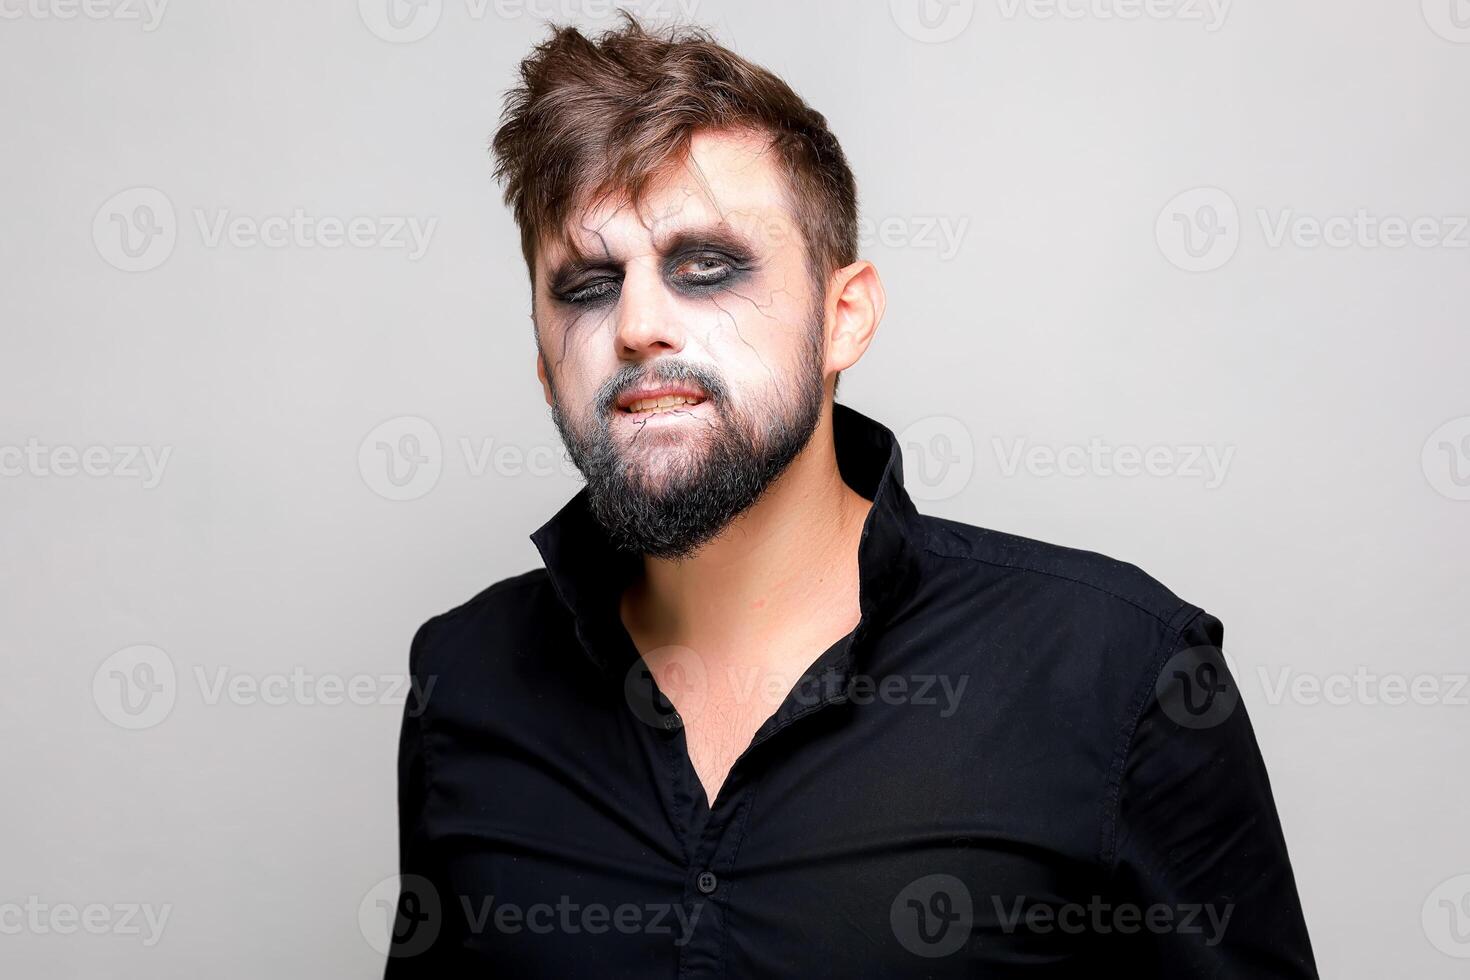 Mort-vivant maquillage pour octobre 31 sur une barbu homme qui spectacles les dents photo